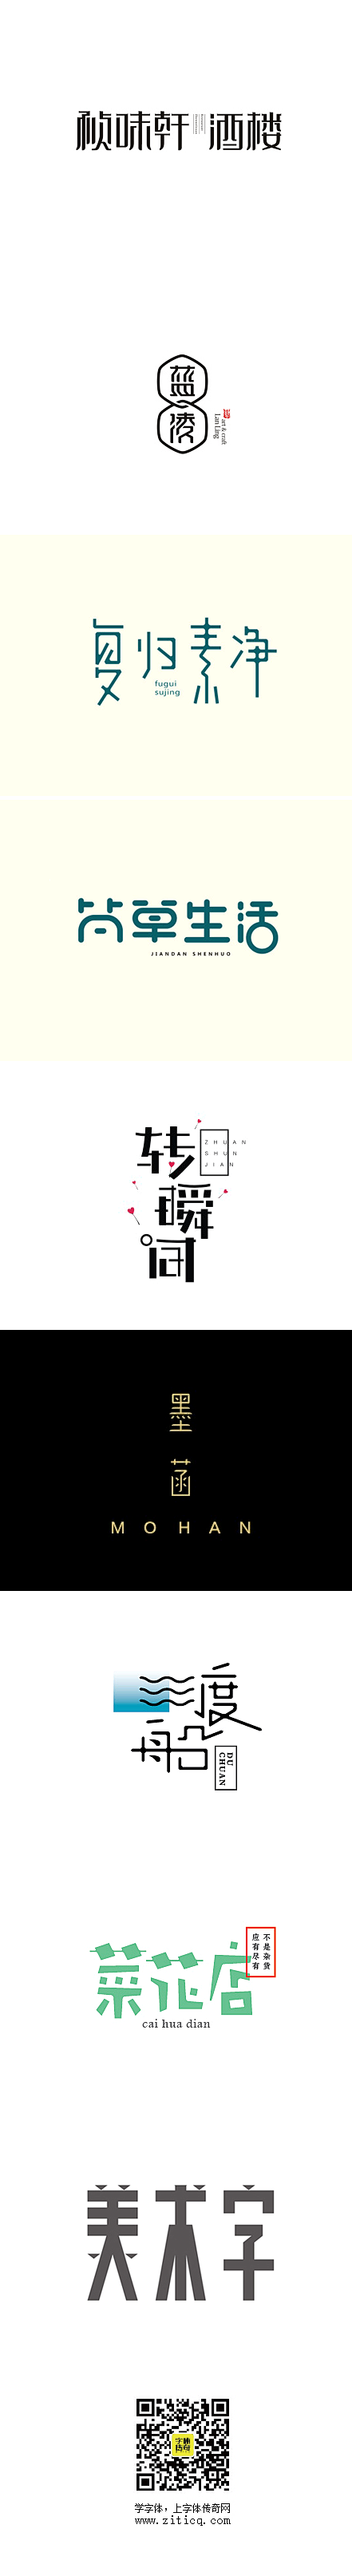 03期-(9组)精选中文商业字体设计欣赏...